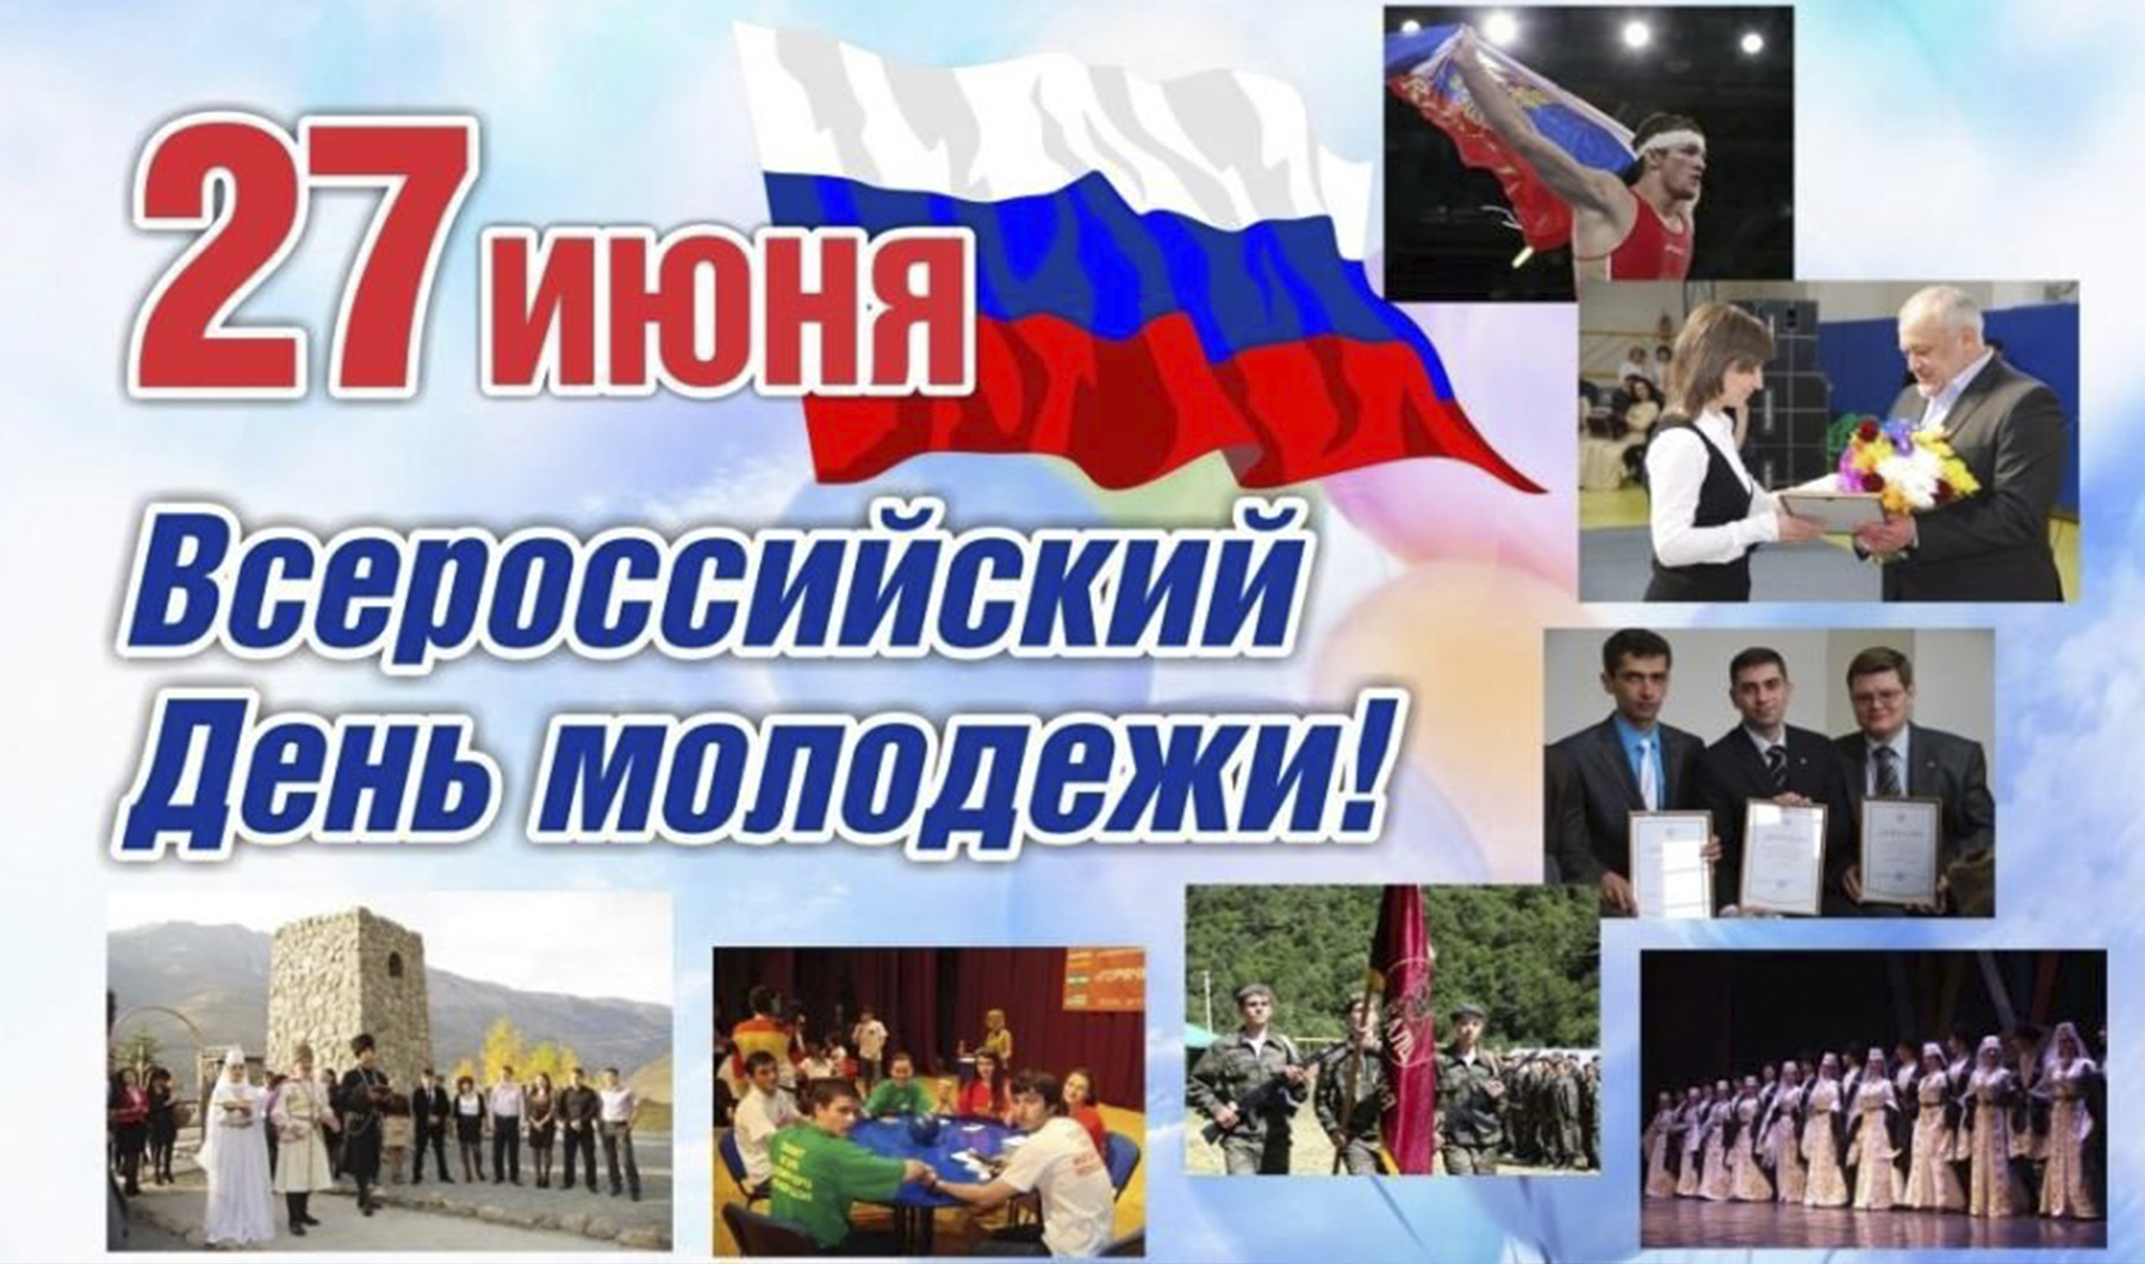 27 июня 2013 г. День молодёжи (Россия). 27 Июня день молодежи России. С днем молодежи. С днём молодёжи картинки.